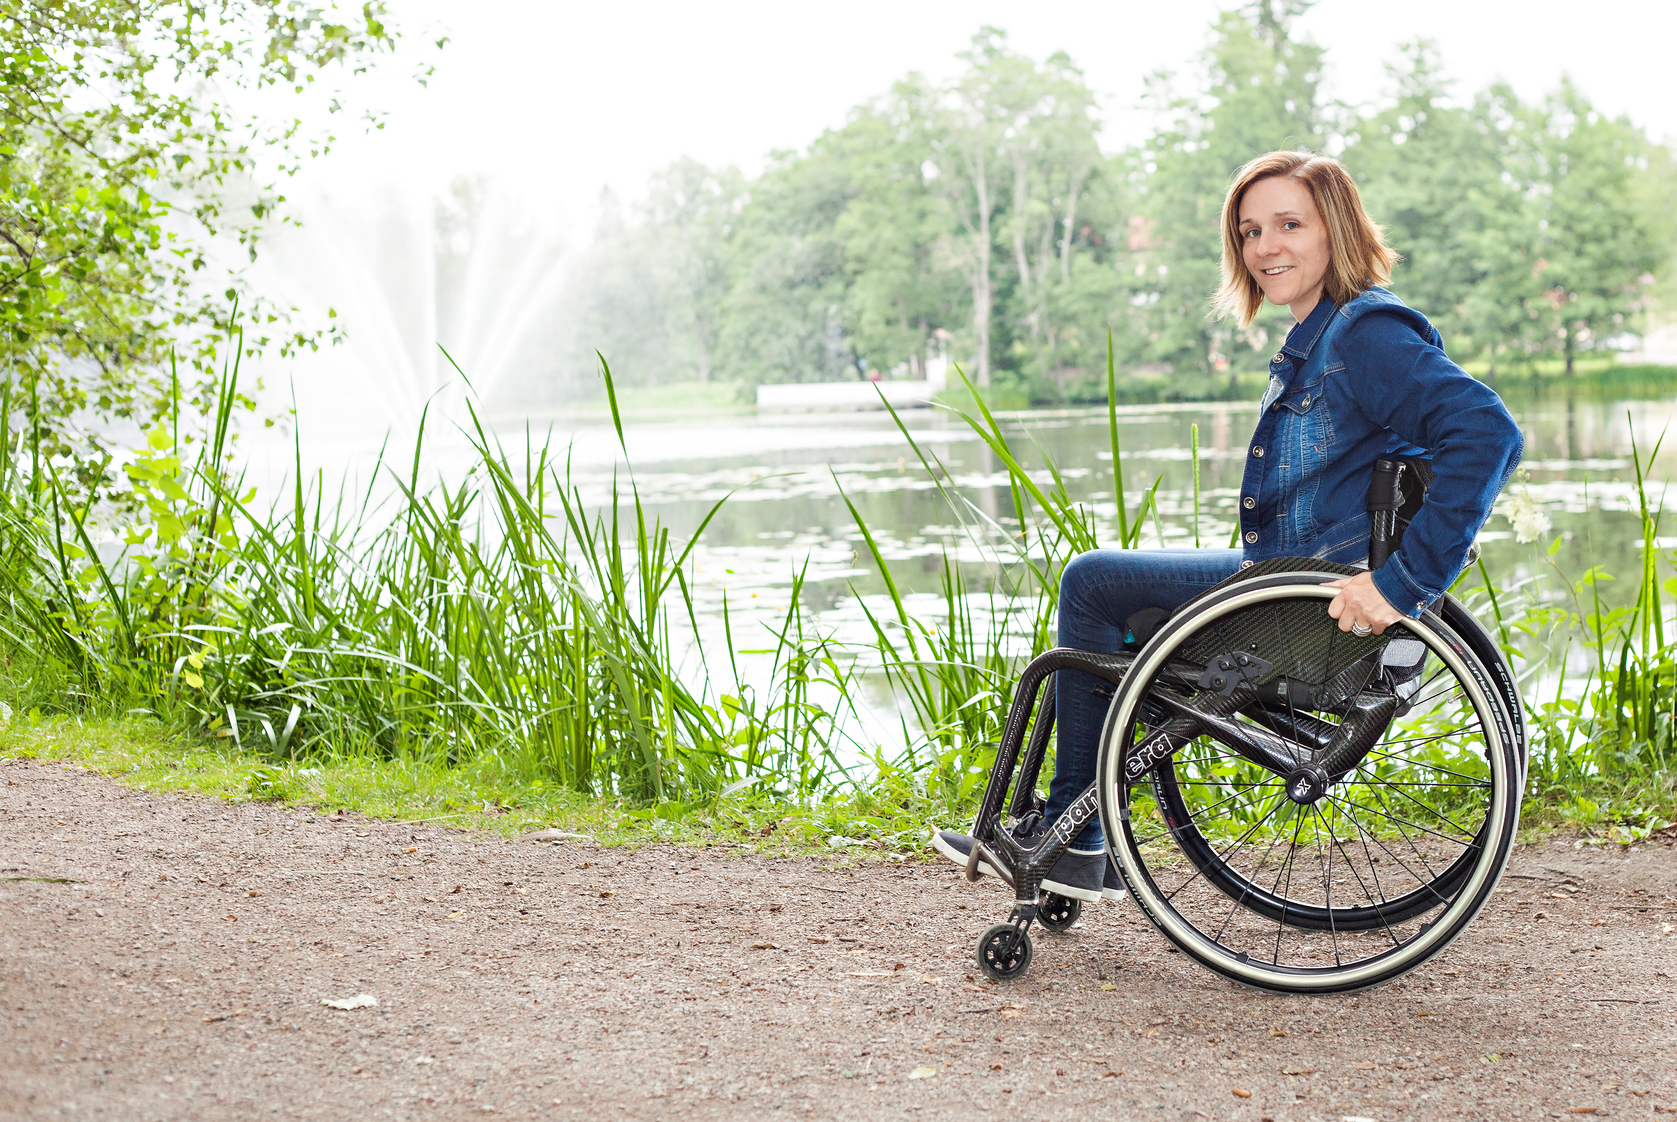 Foto på Josefine Axefall som sitter i rullstolen framför fontänen i Sala Stadspark en solig sommardag. Hon är klädd i blåjeans och jeansjacka.

Fotograf: allprintreklam.se